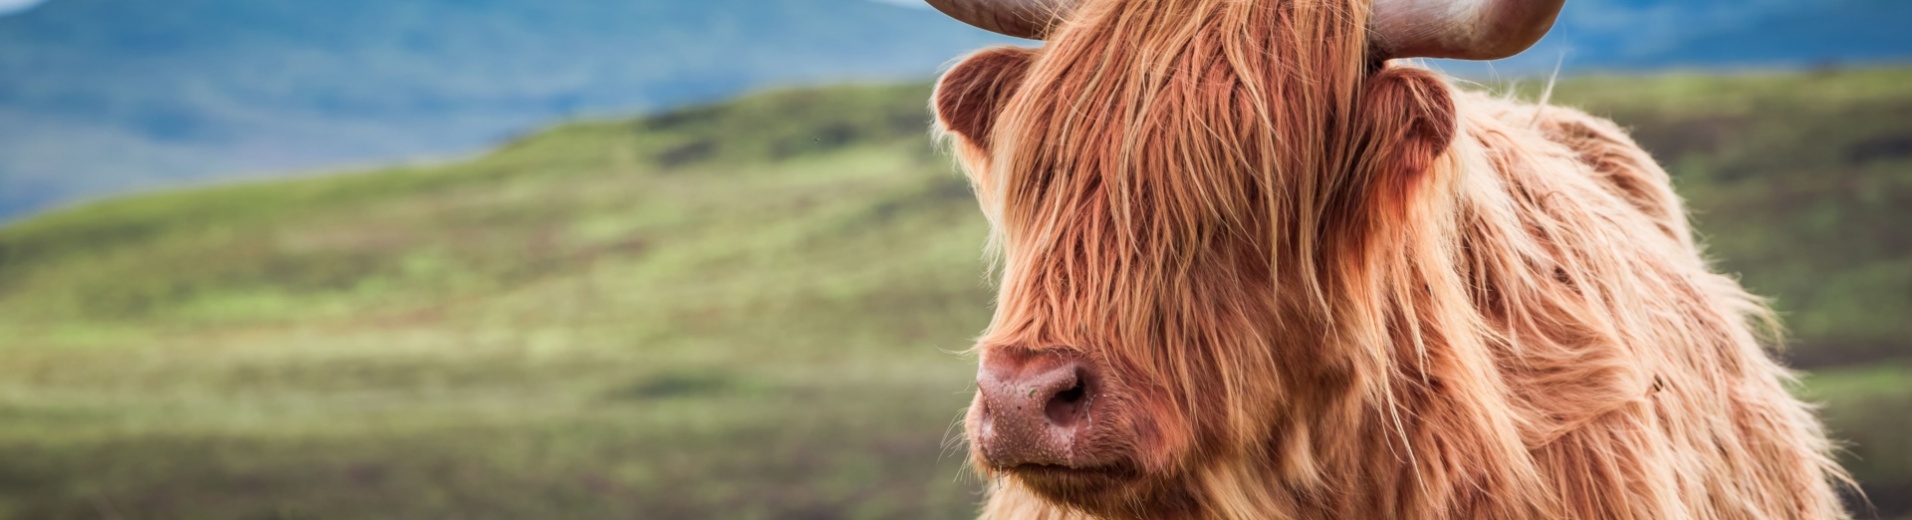 Vache des Highlands devant un paysage écossais